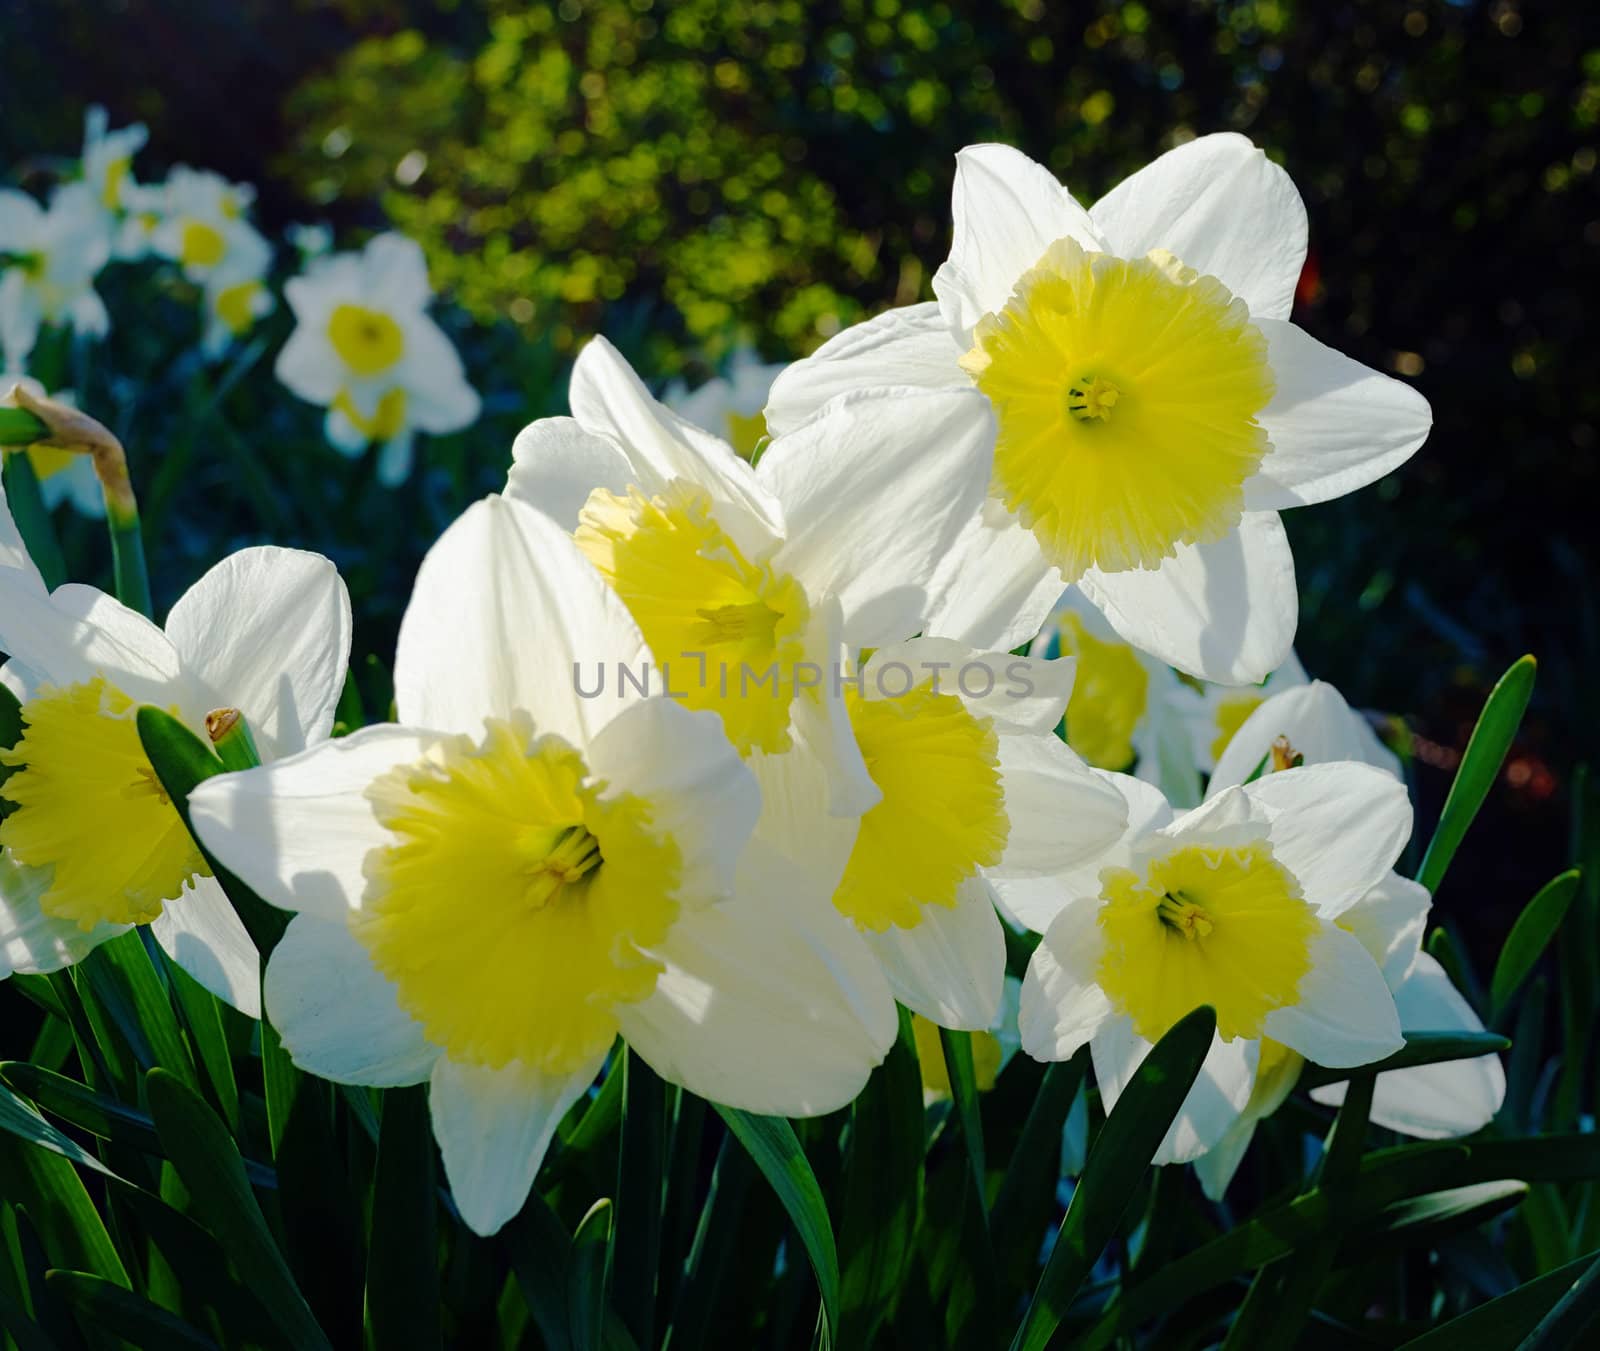 Daffodil backlit by nprause